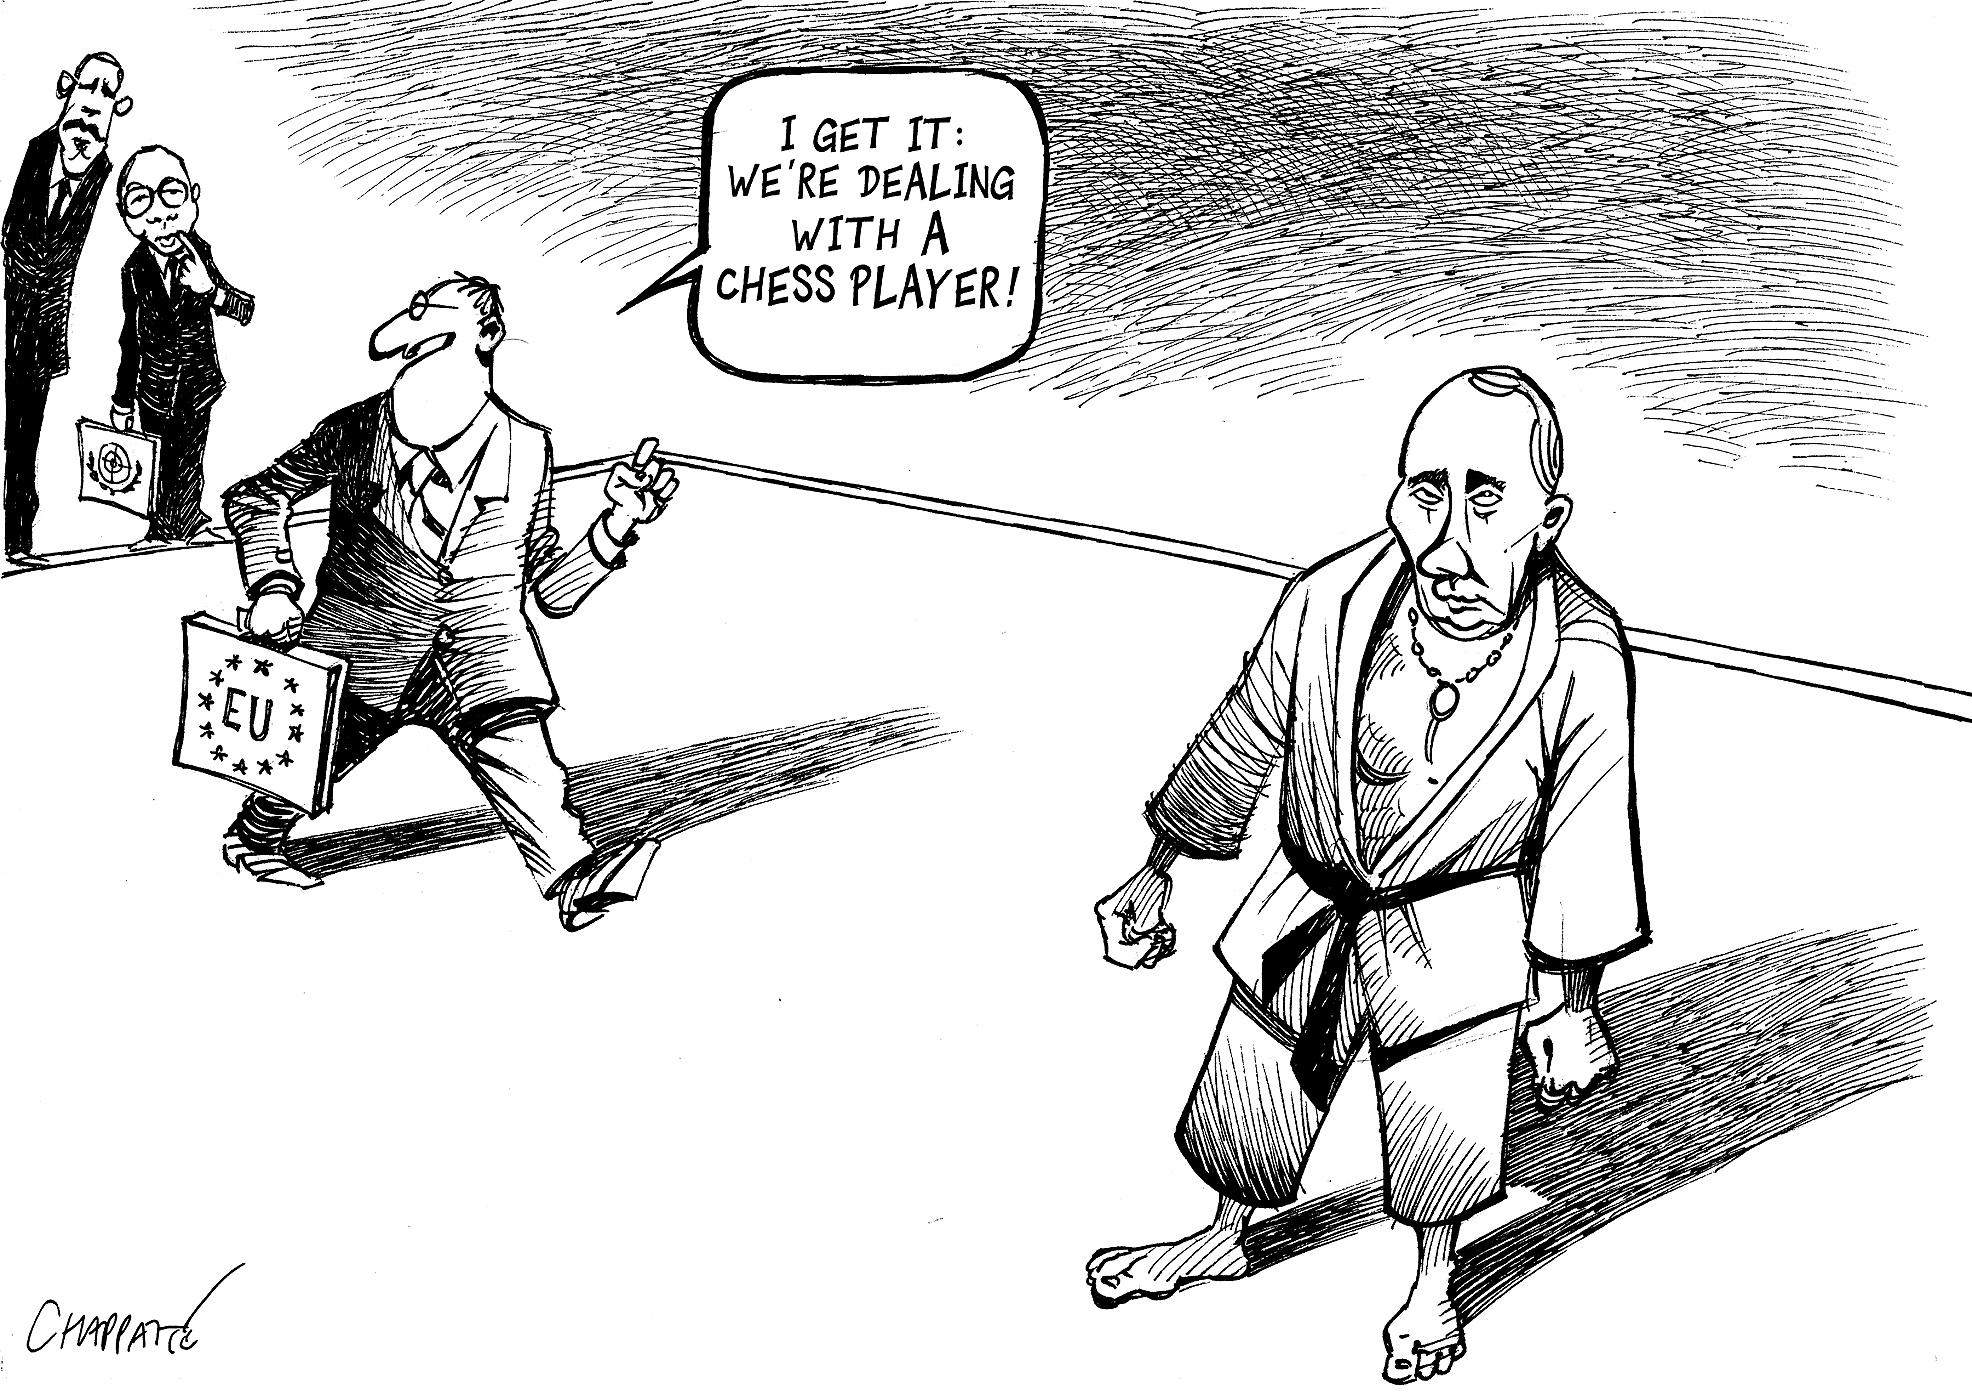 Europa and Putin